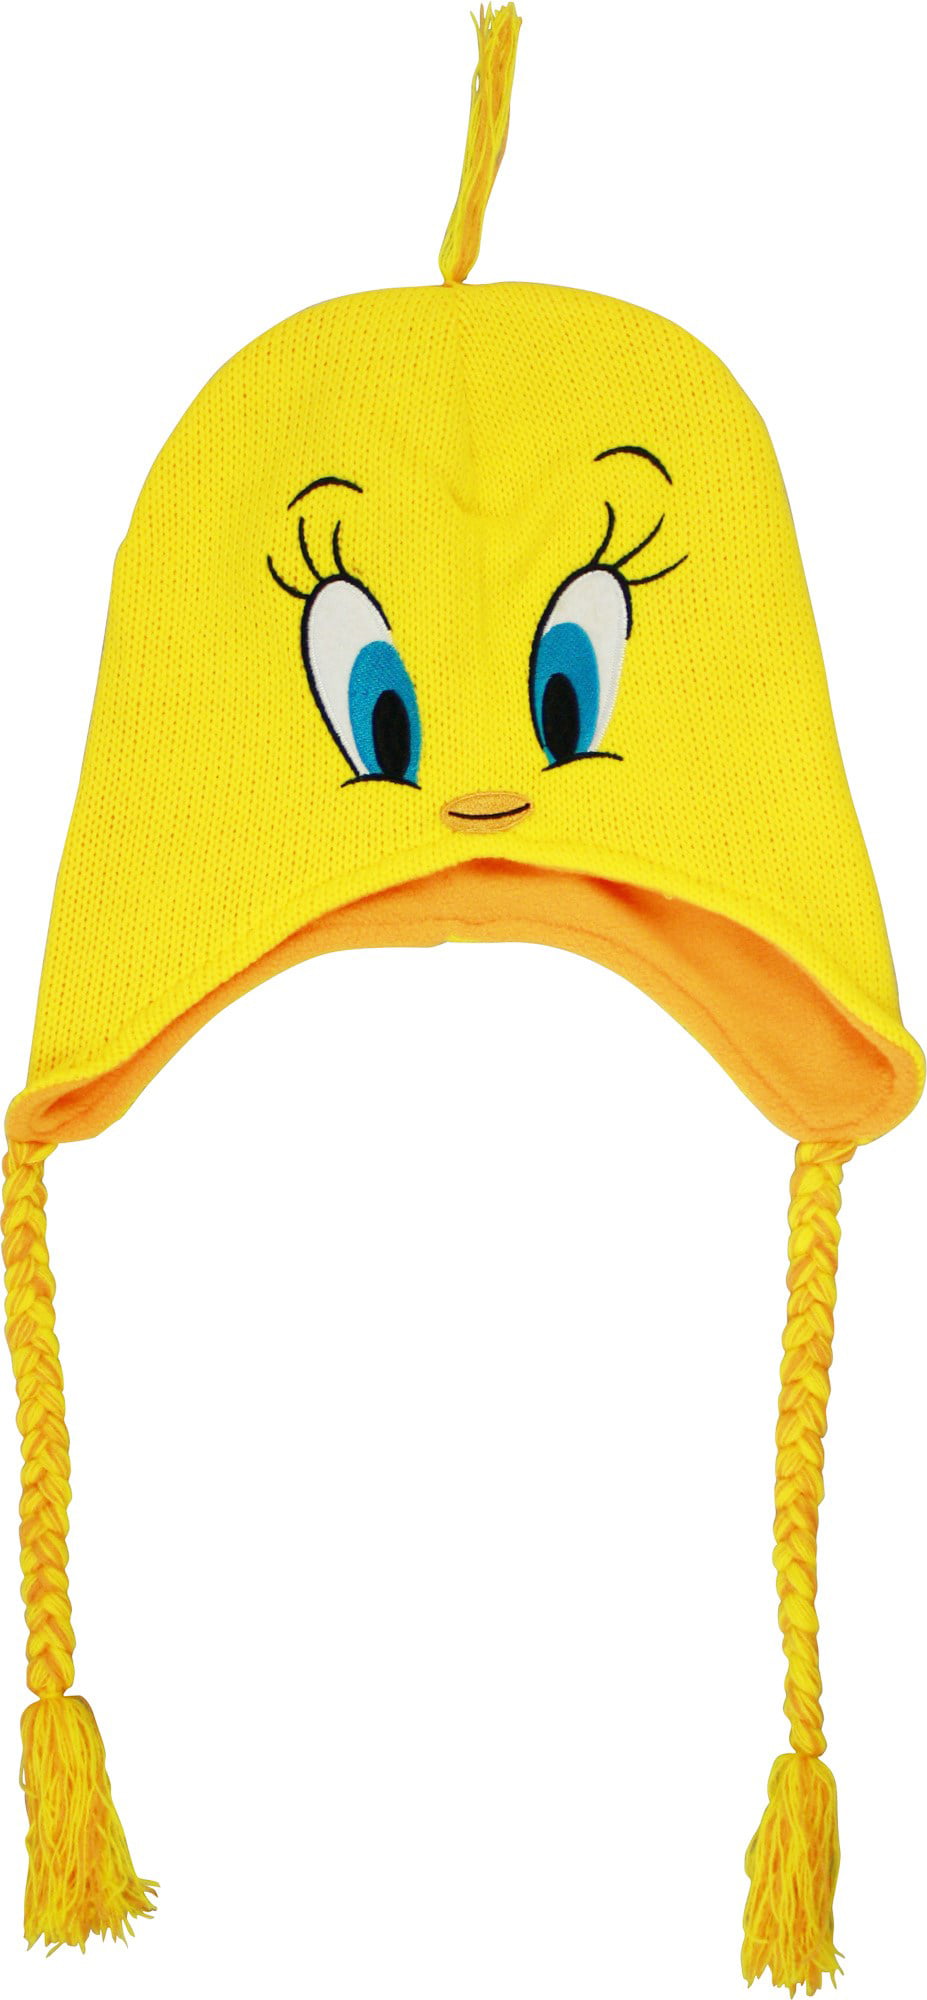 NEW Toddler Girls Beanie Hat Mittens Set Tweety Pie Bird Yellow Cap Winter Snow 